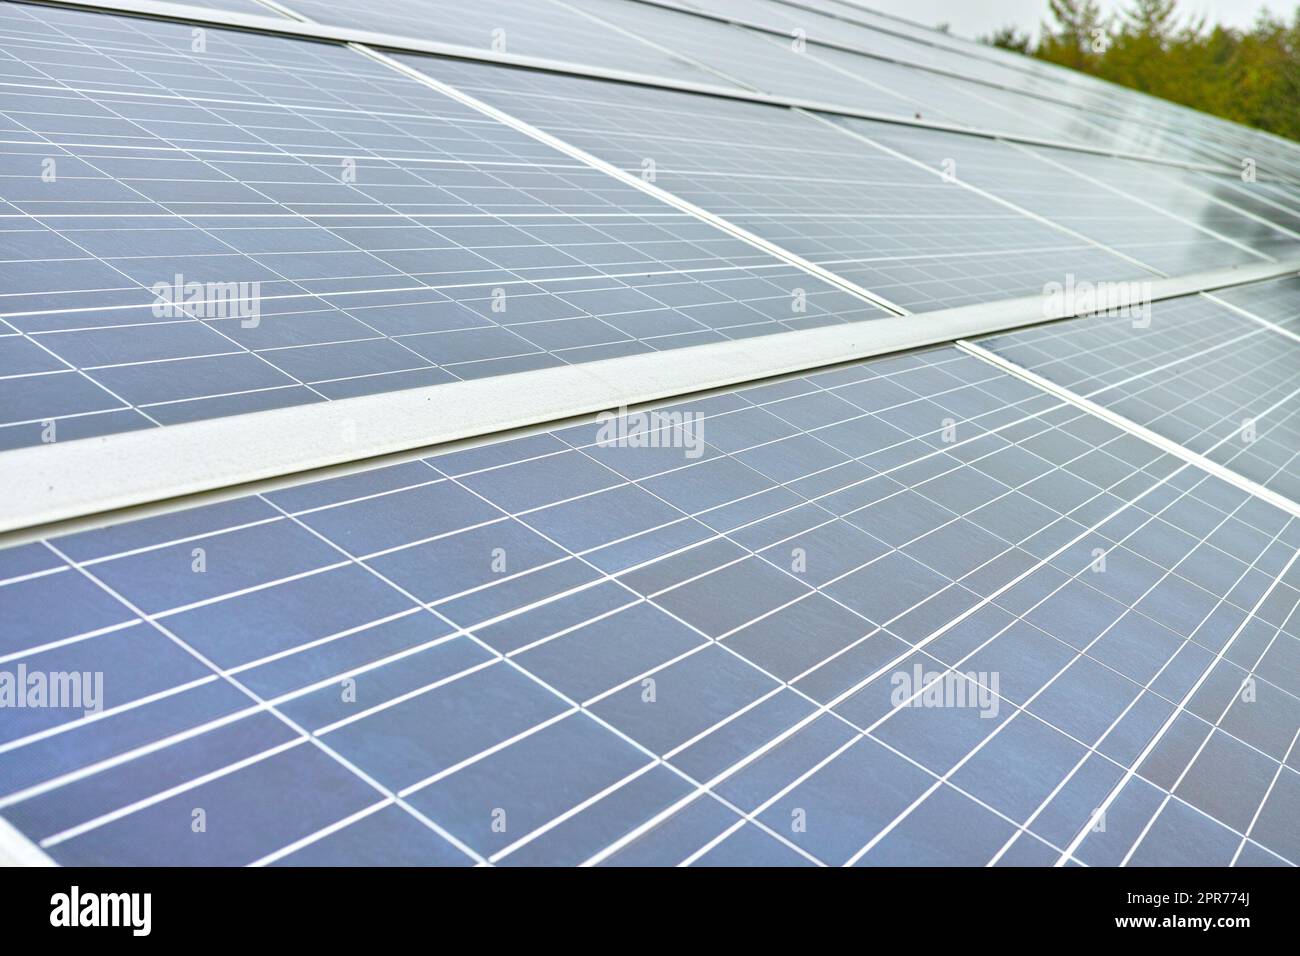 Los paneles celulares de instalación de energía solar son una fuente de energía renovable y sostenible. Paneles solares azules en Dinamarca. Generación de electricidad fotovoltaica en estaciones eléctricas, energía alternativa de la naturaleza Foto de stock